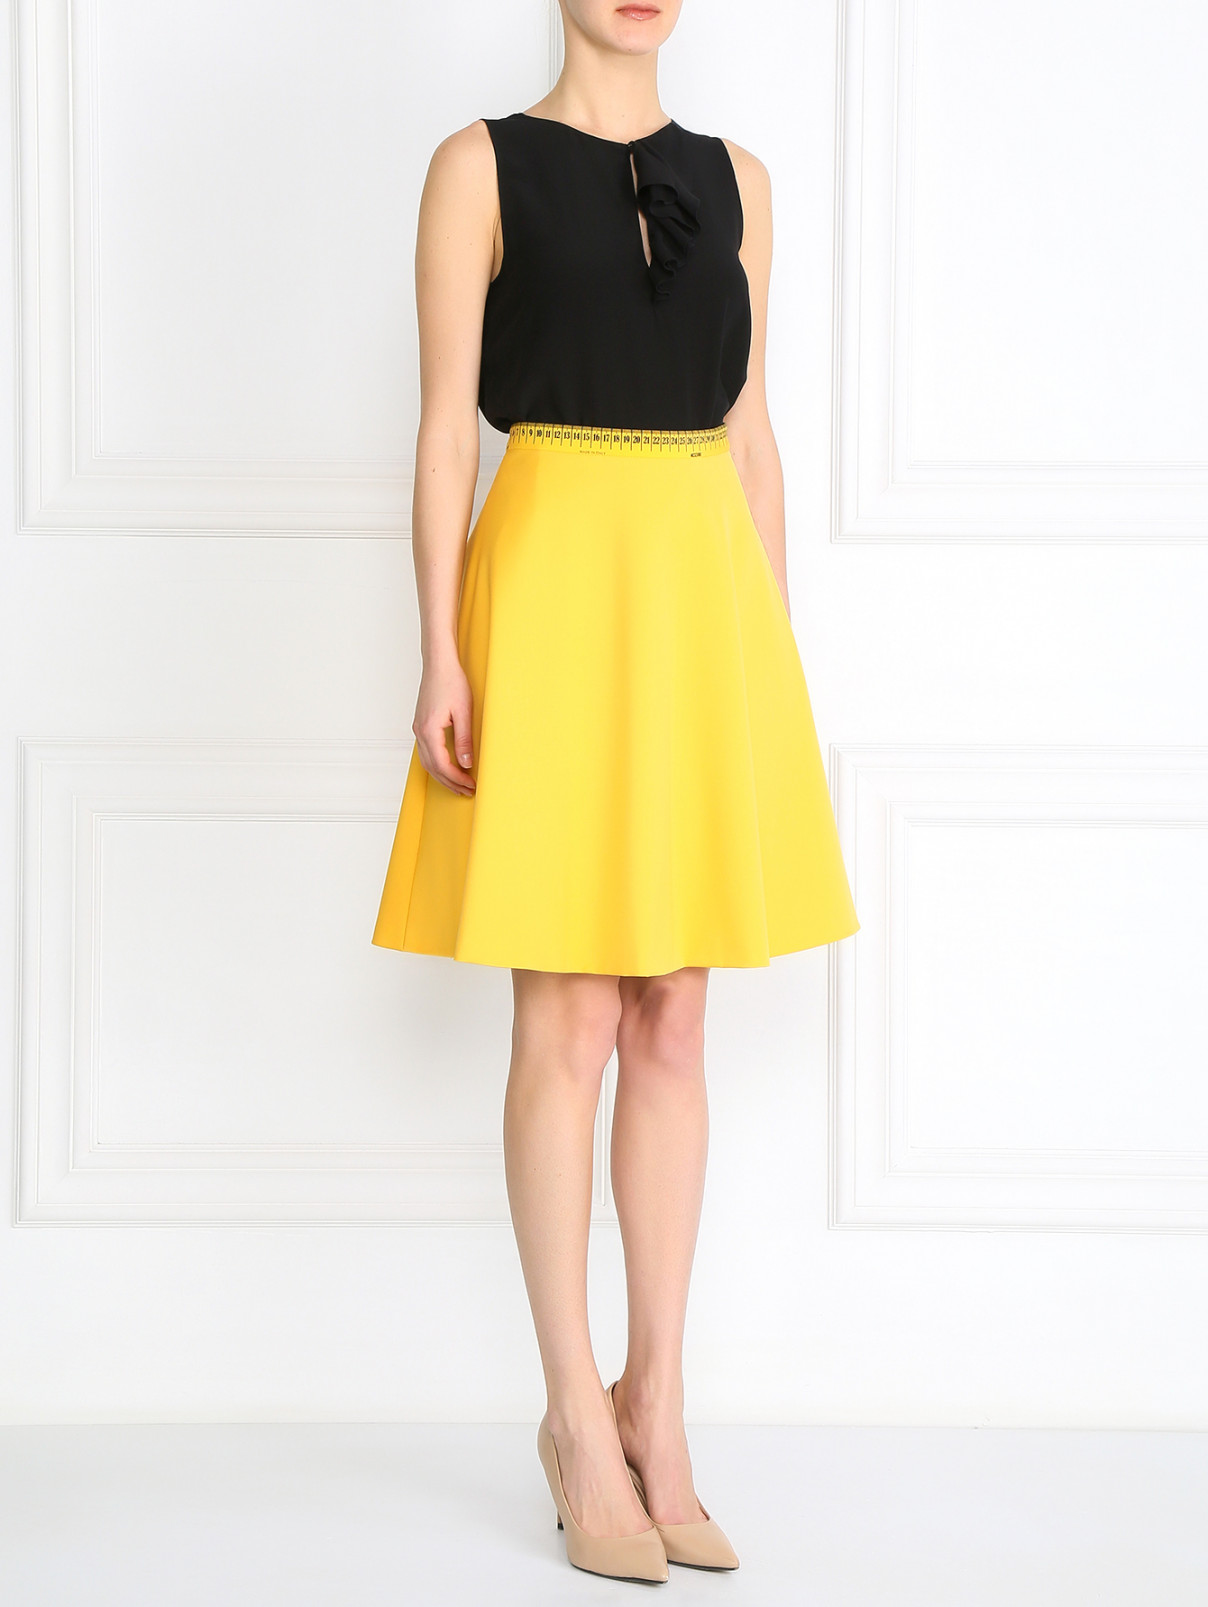 Шерстяная юбка с принтом на поясе Moschino Couture  –  Модель Общий вид  – Цвет:  Желтый